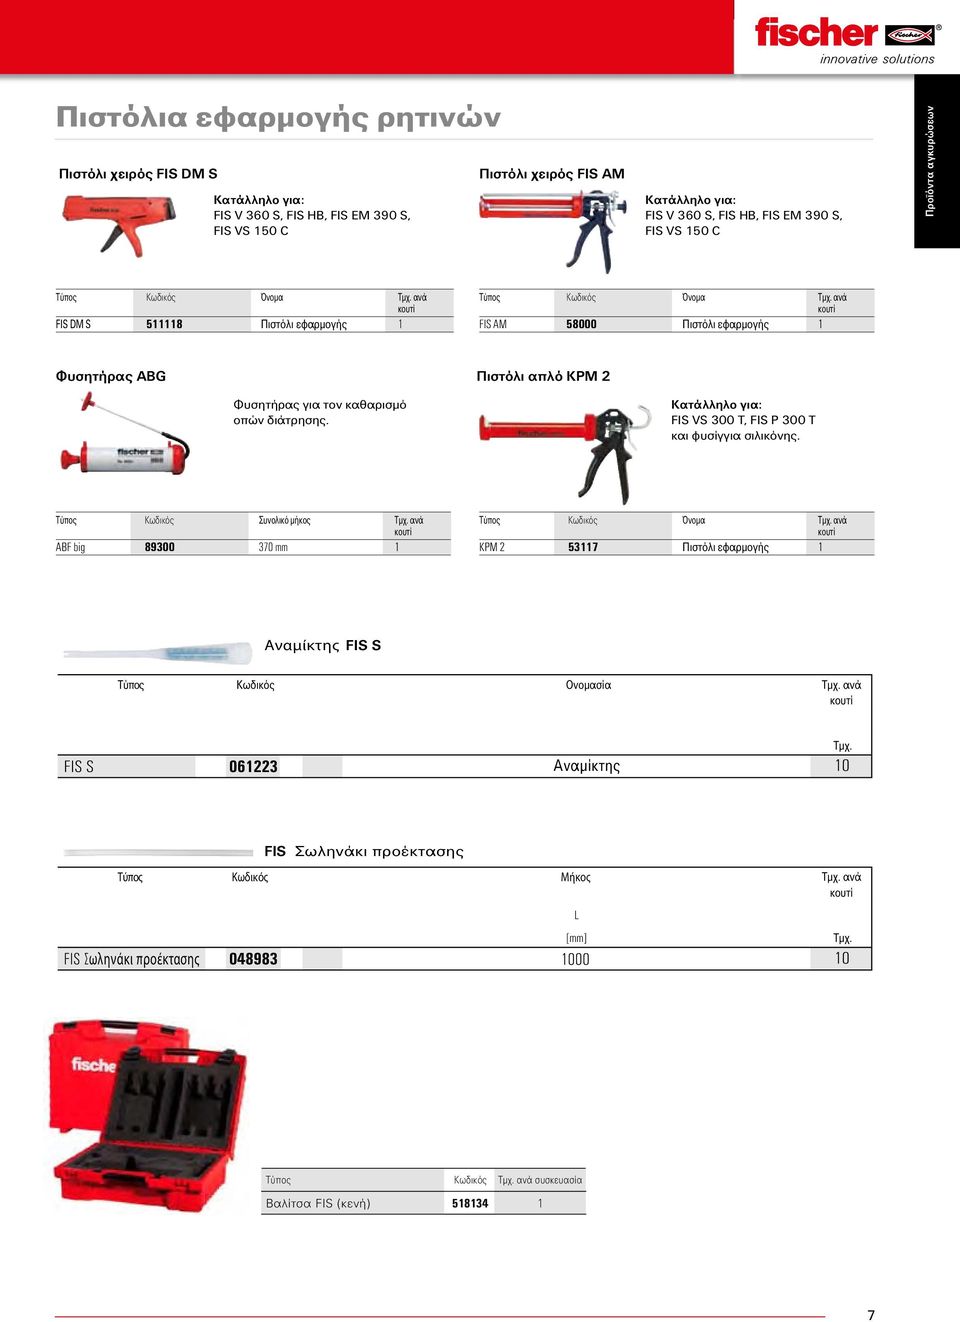 Τύπος Κωδικός Όνομα ανά κουτί FIS AM 58000 Πιστόλι εφαρμογής 1 Πιστόλι απλό KPM 2 Κατάλληλο για: FIS VS 300 T, FIS P 300 T και φυσίγγια σιλικόνης.